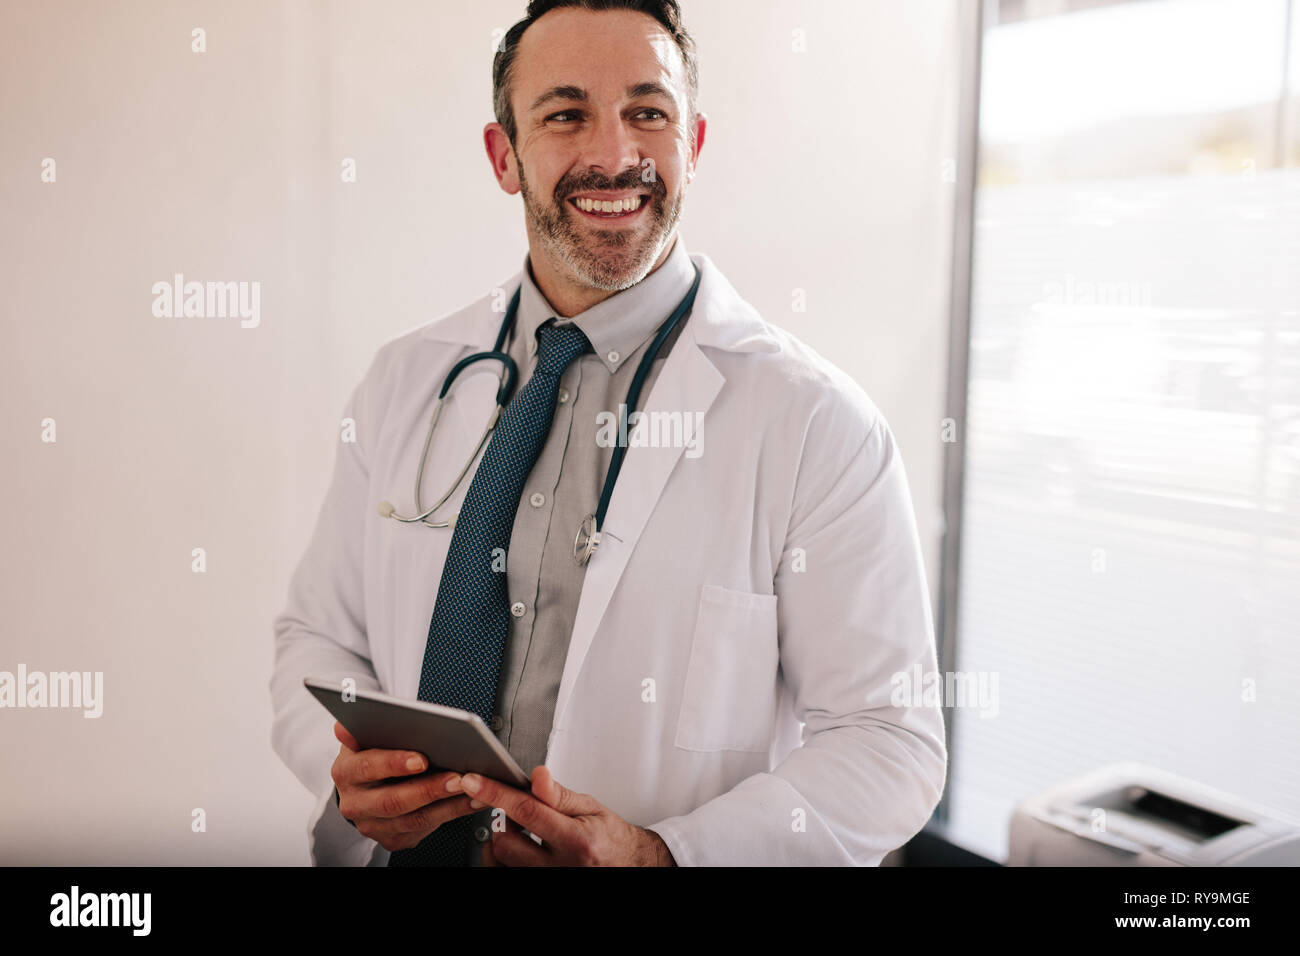 Smiling mature homme médecin avec une tablette numérique dans son bureau. Succès professionnel dans sa clinique. Banque D'Images